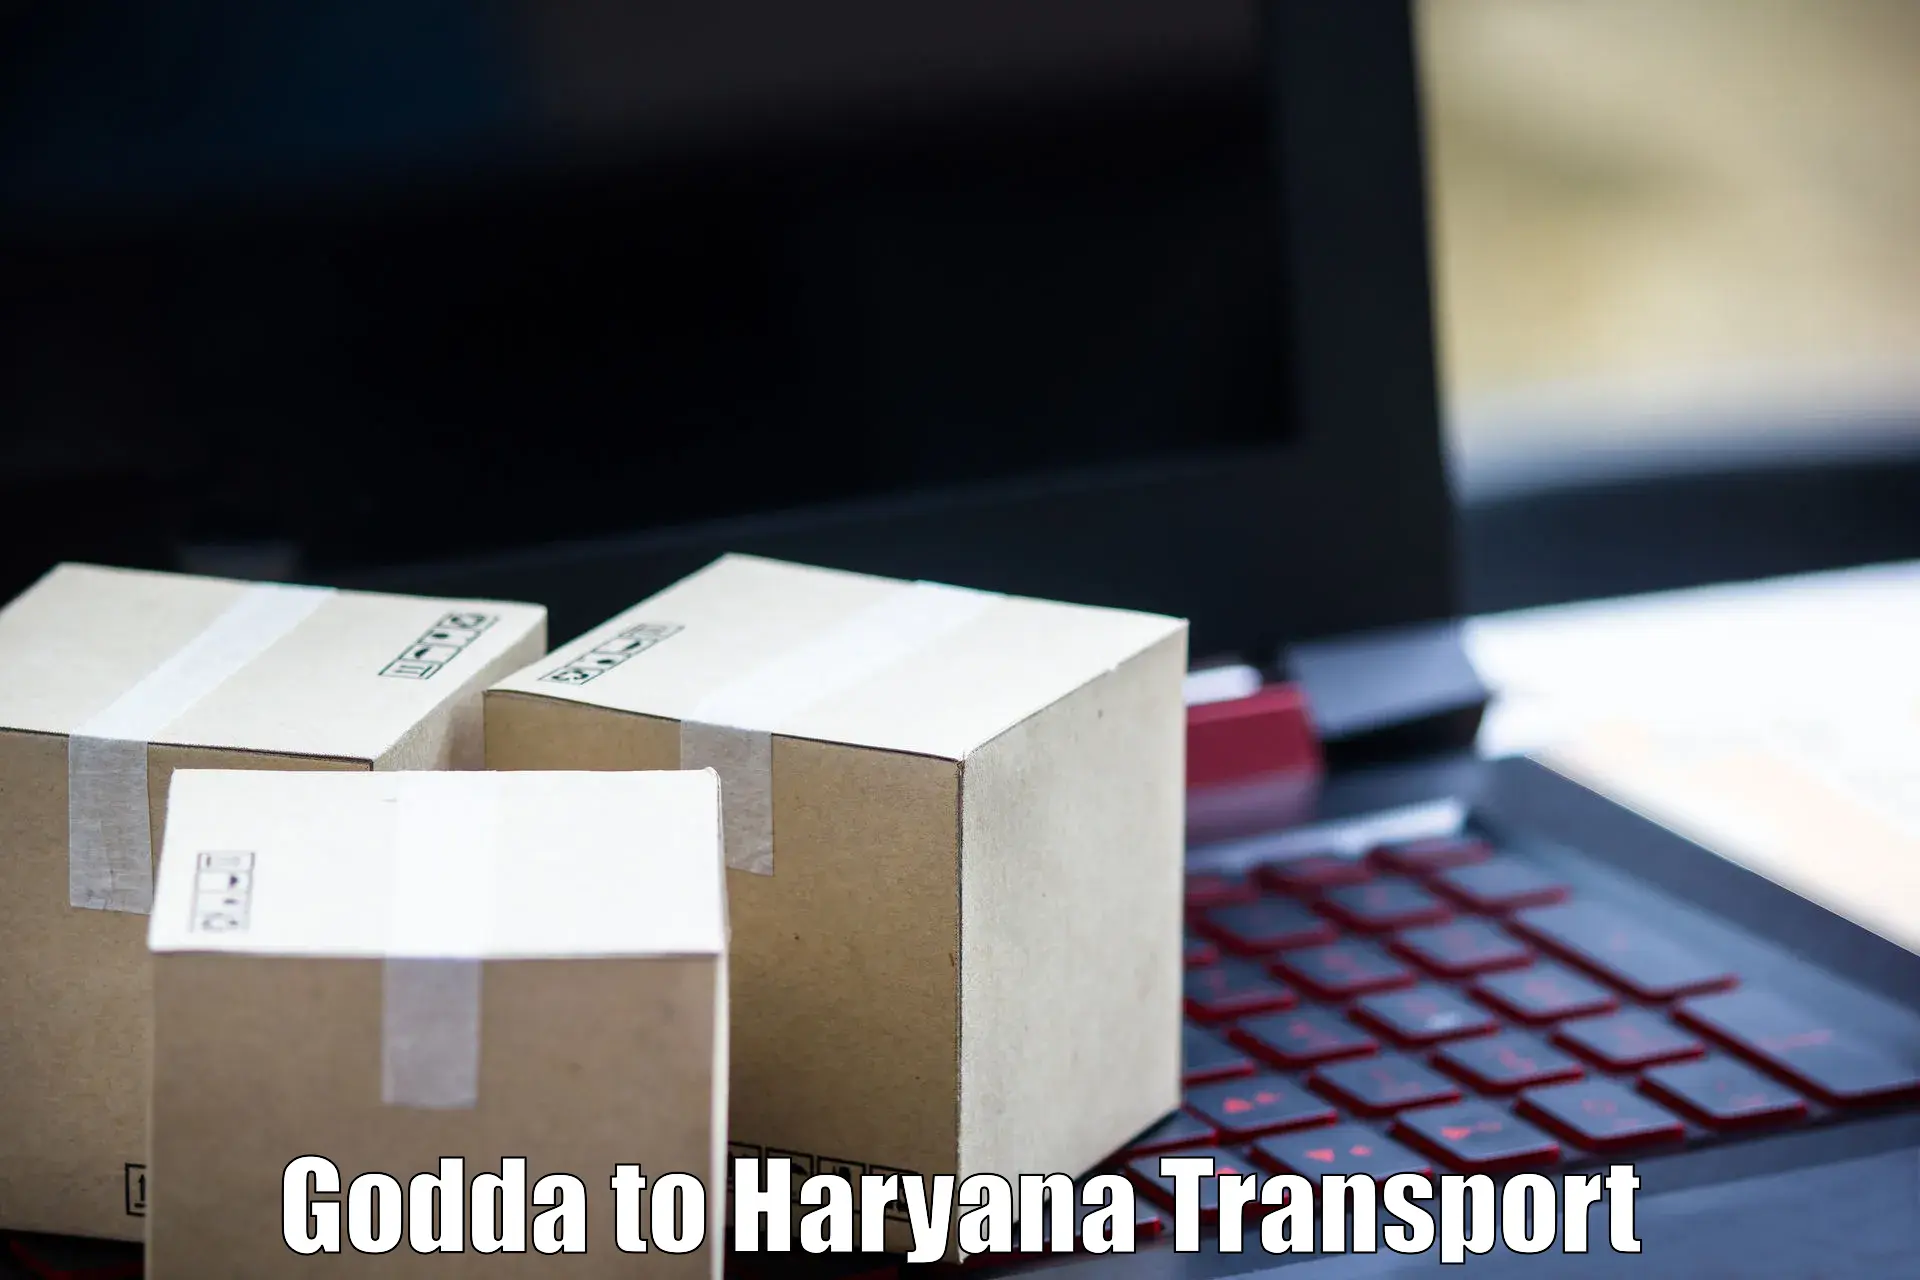 Transport services in Godda to Loharu